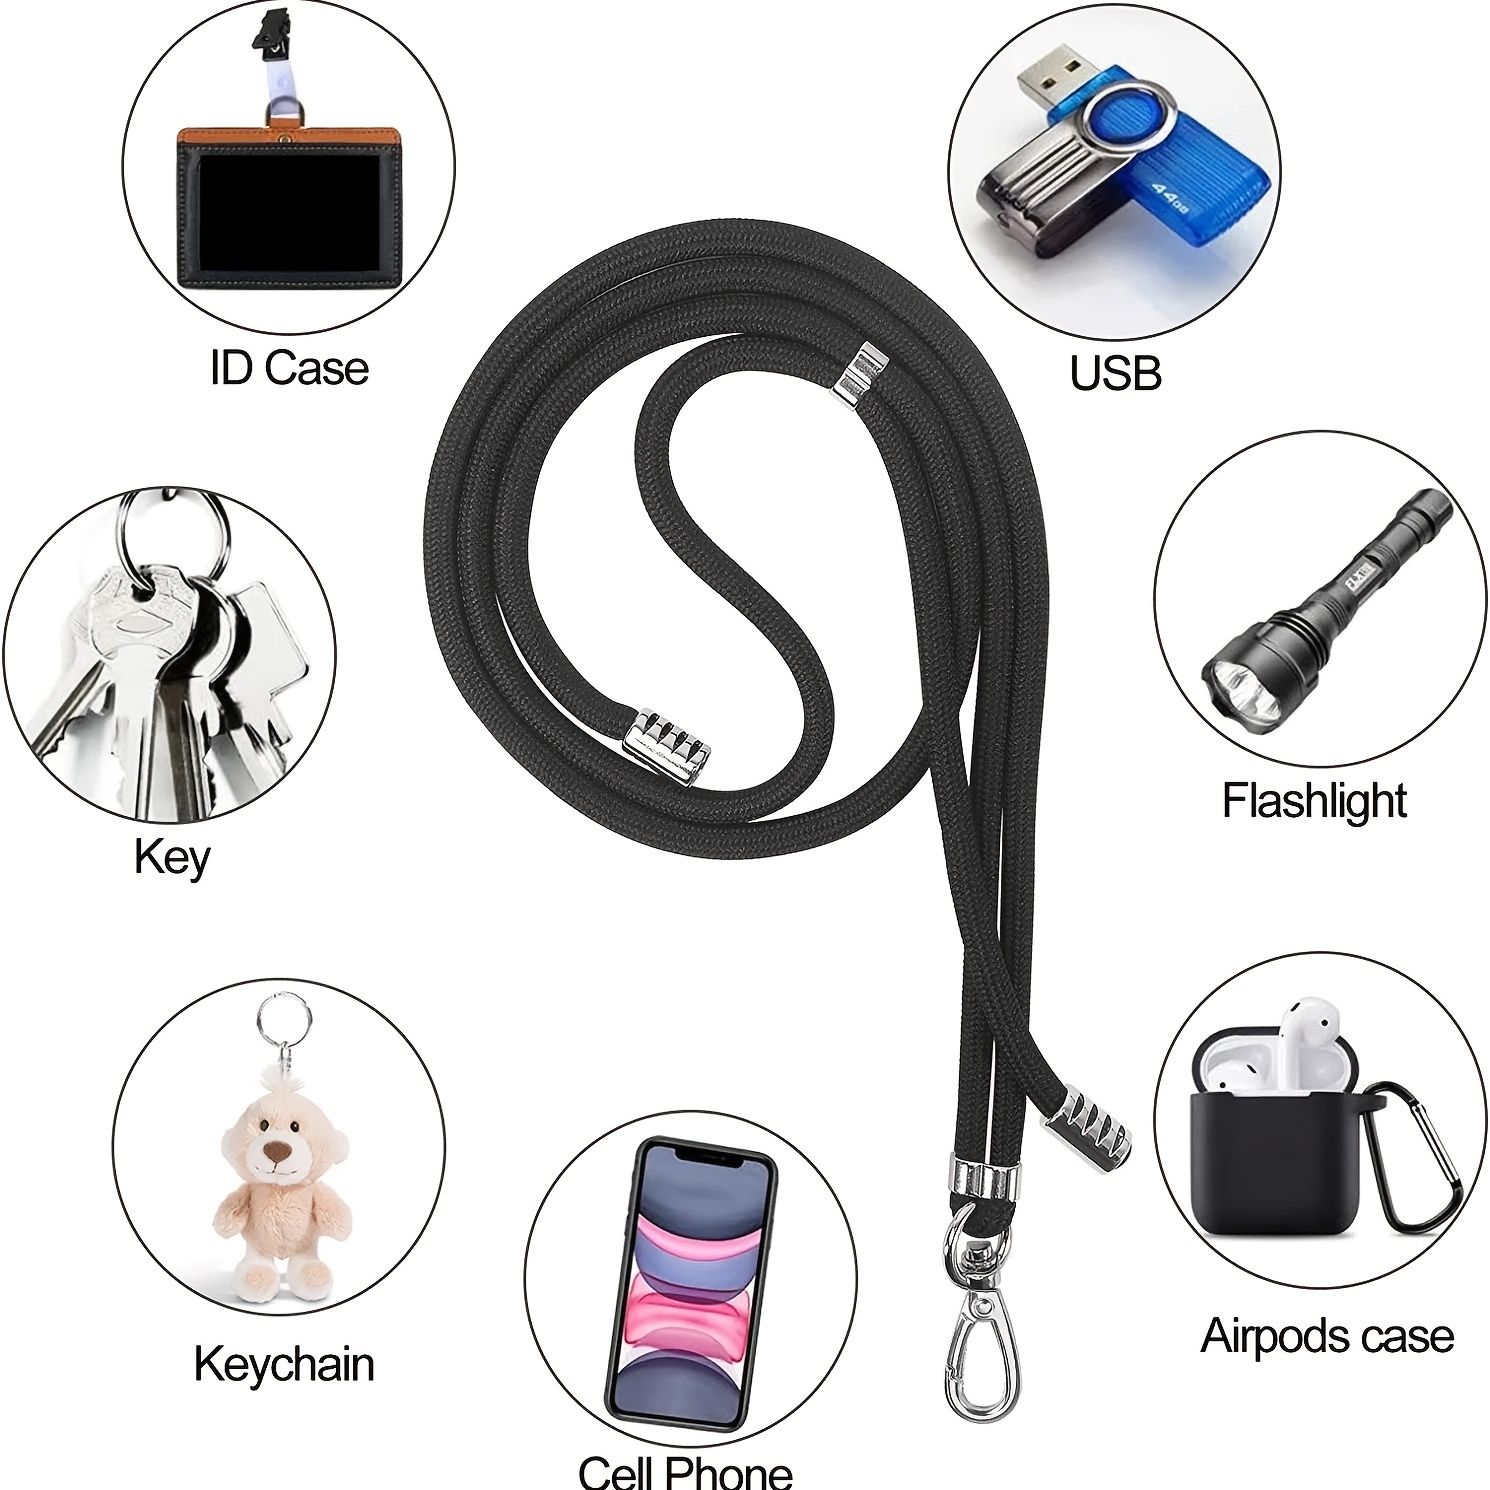 takyu Cordón universal para teléfono celular con correa ajustable de nailon  para el cuello, correa de seguridad compatible con la mayoría de teléfonos